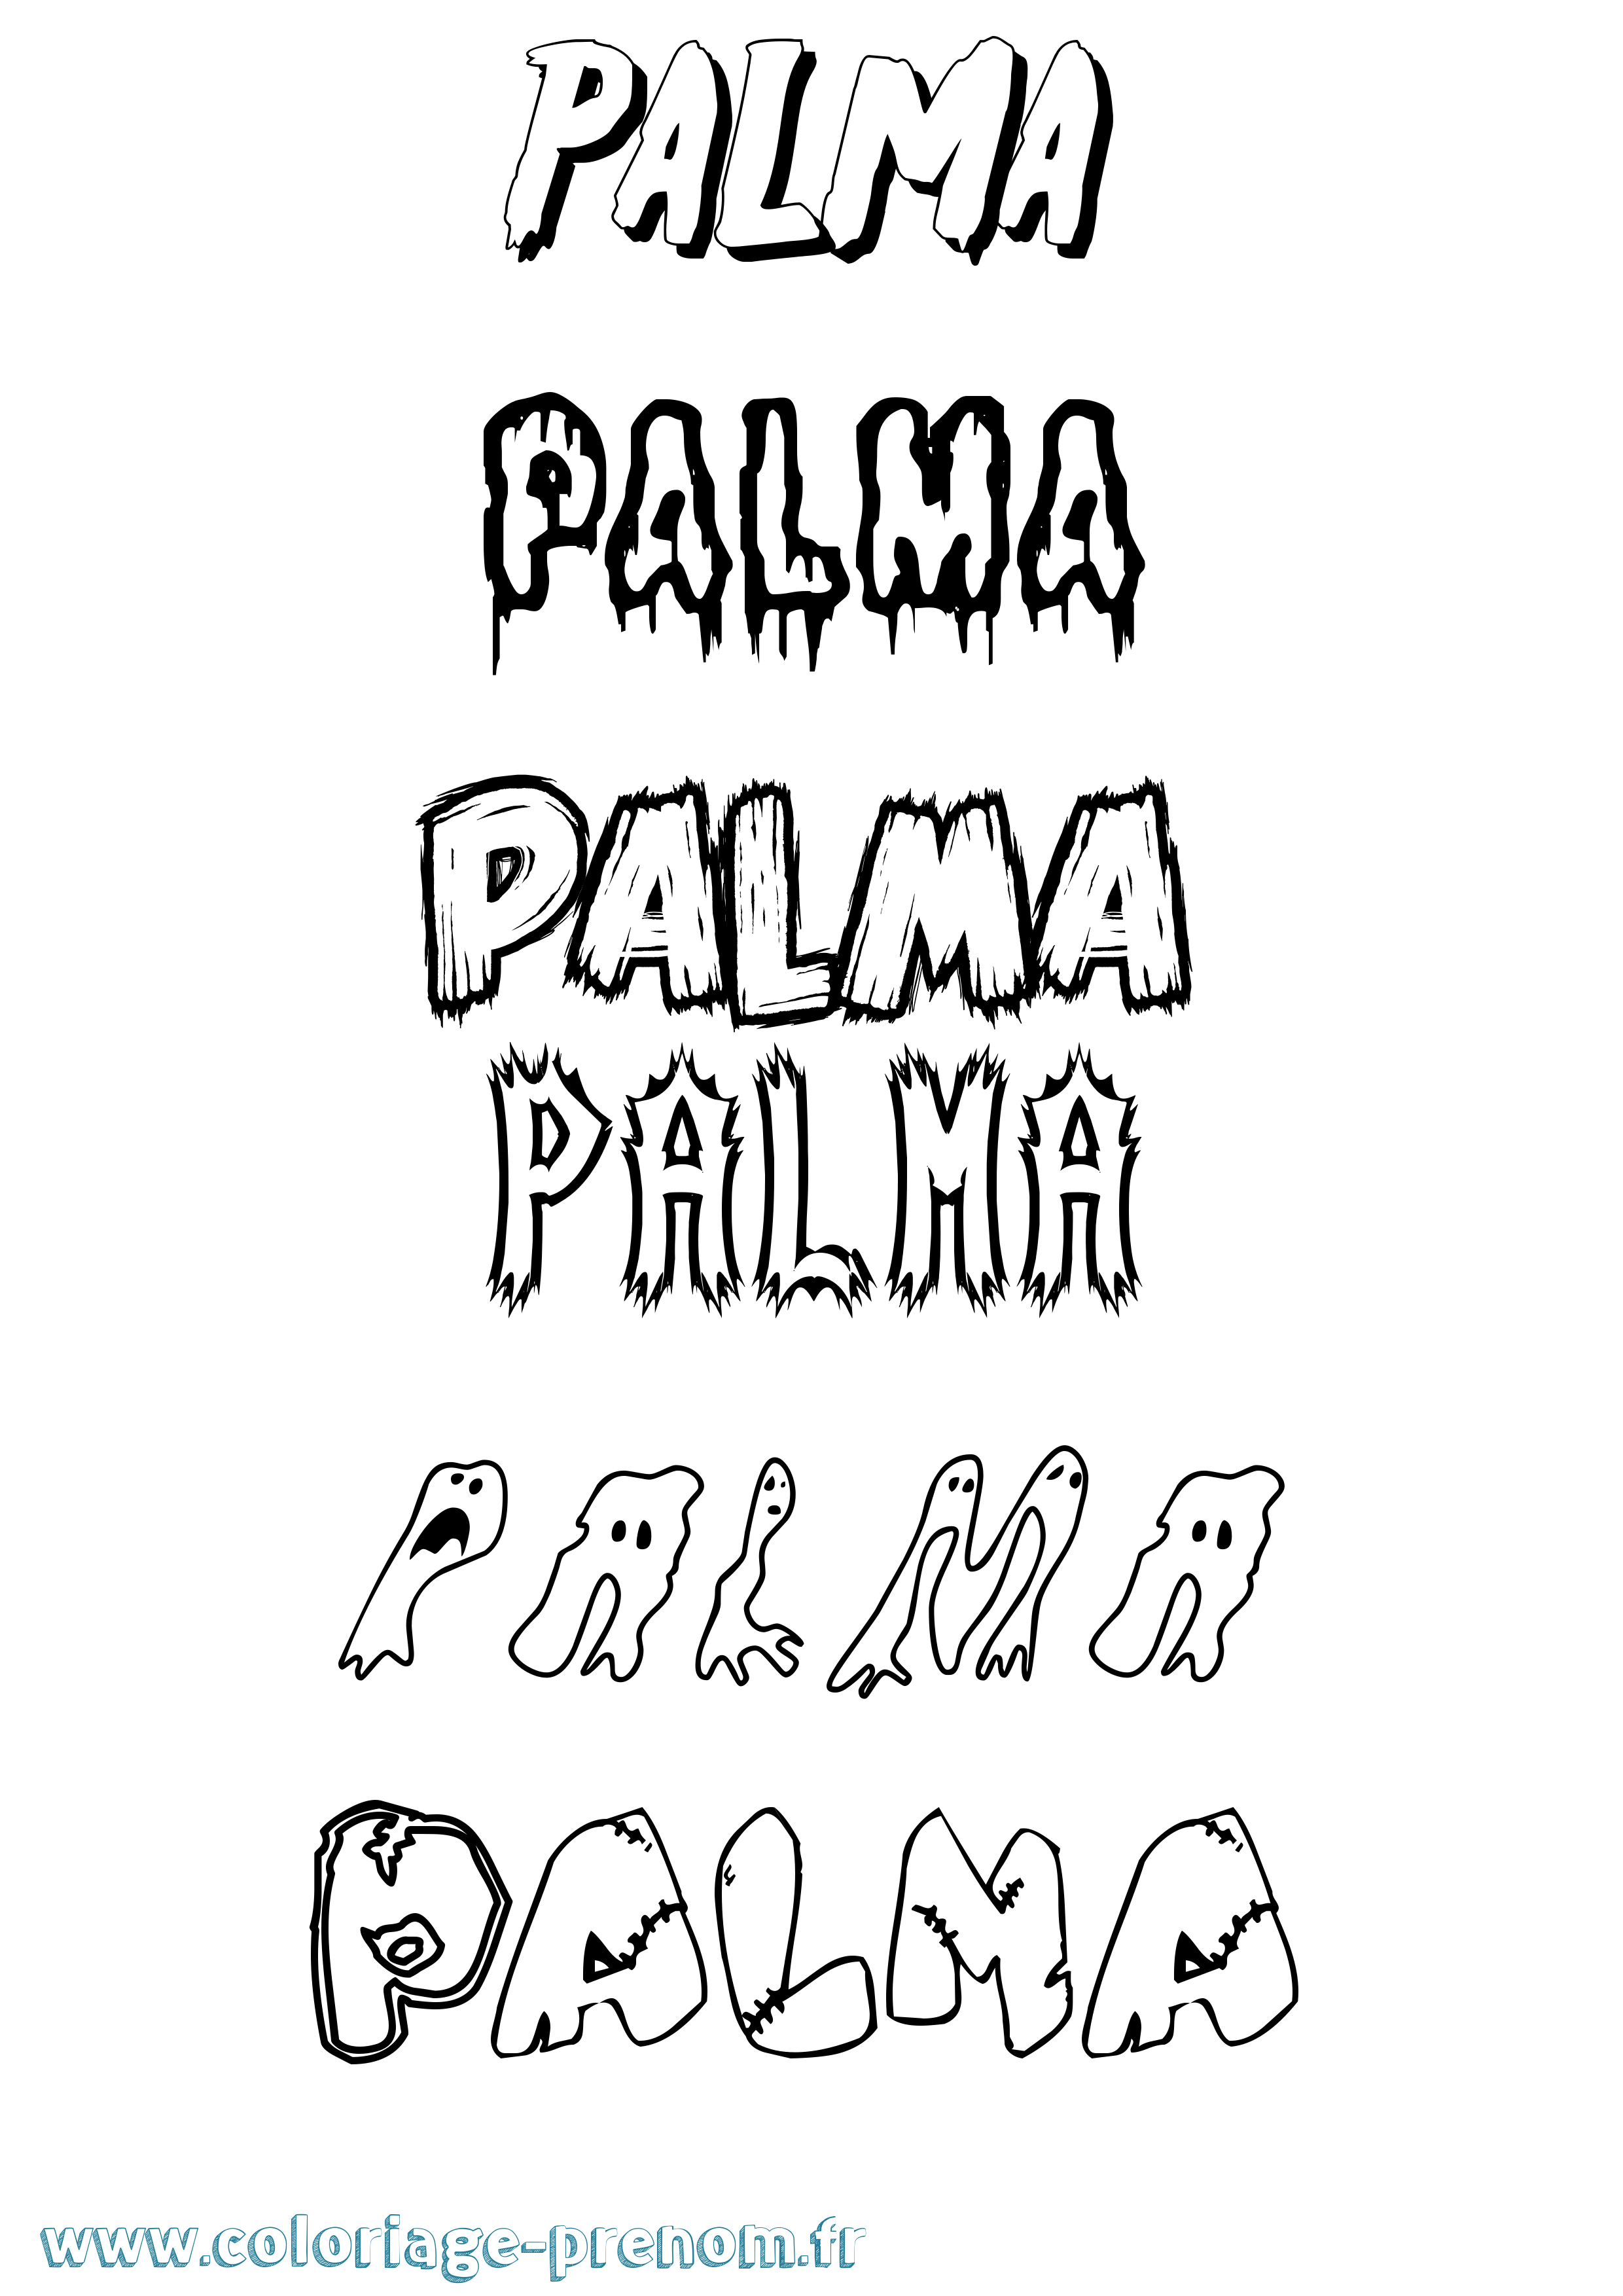 Coloriage prénom Palma Frisson